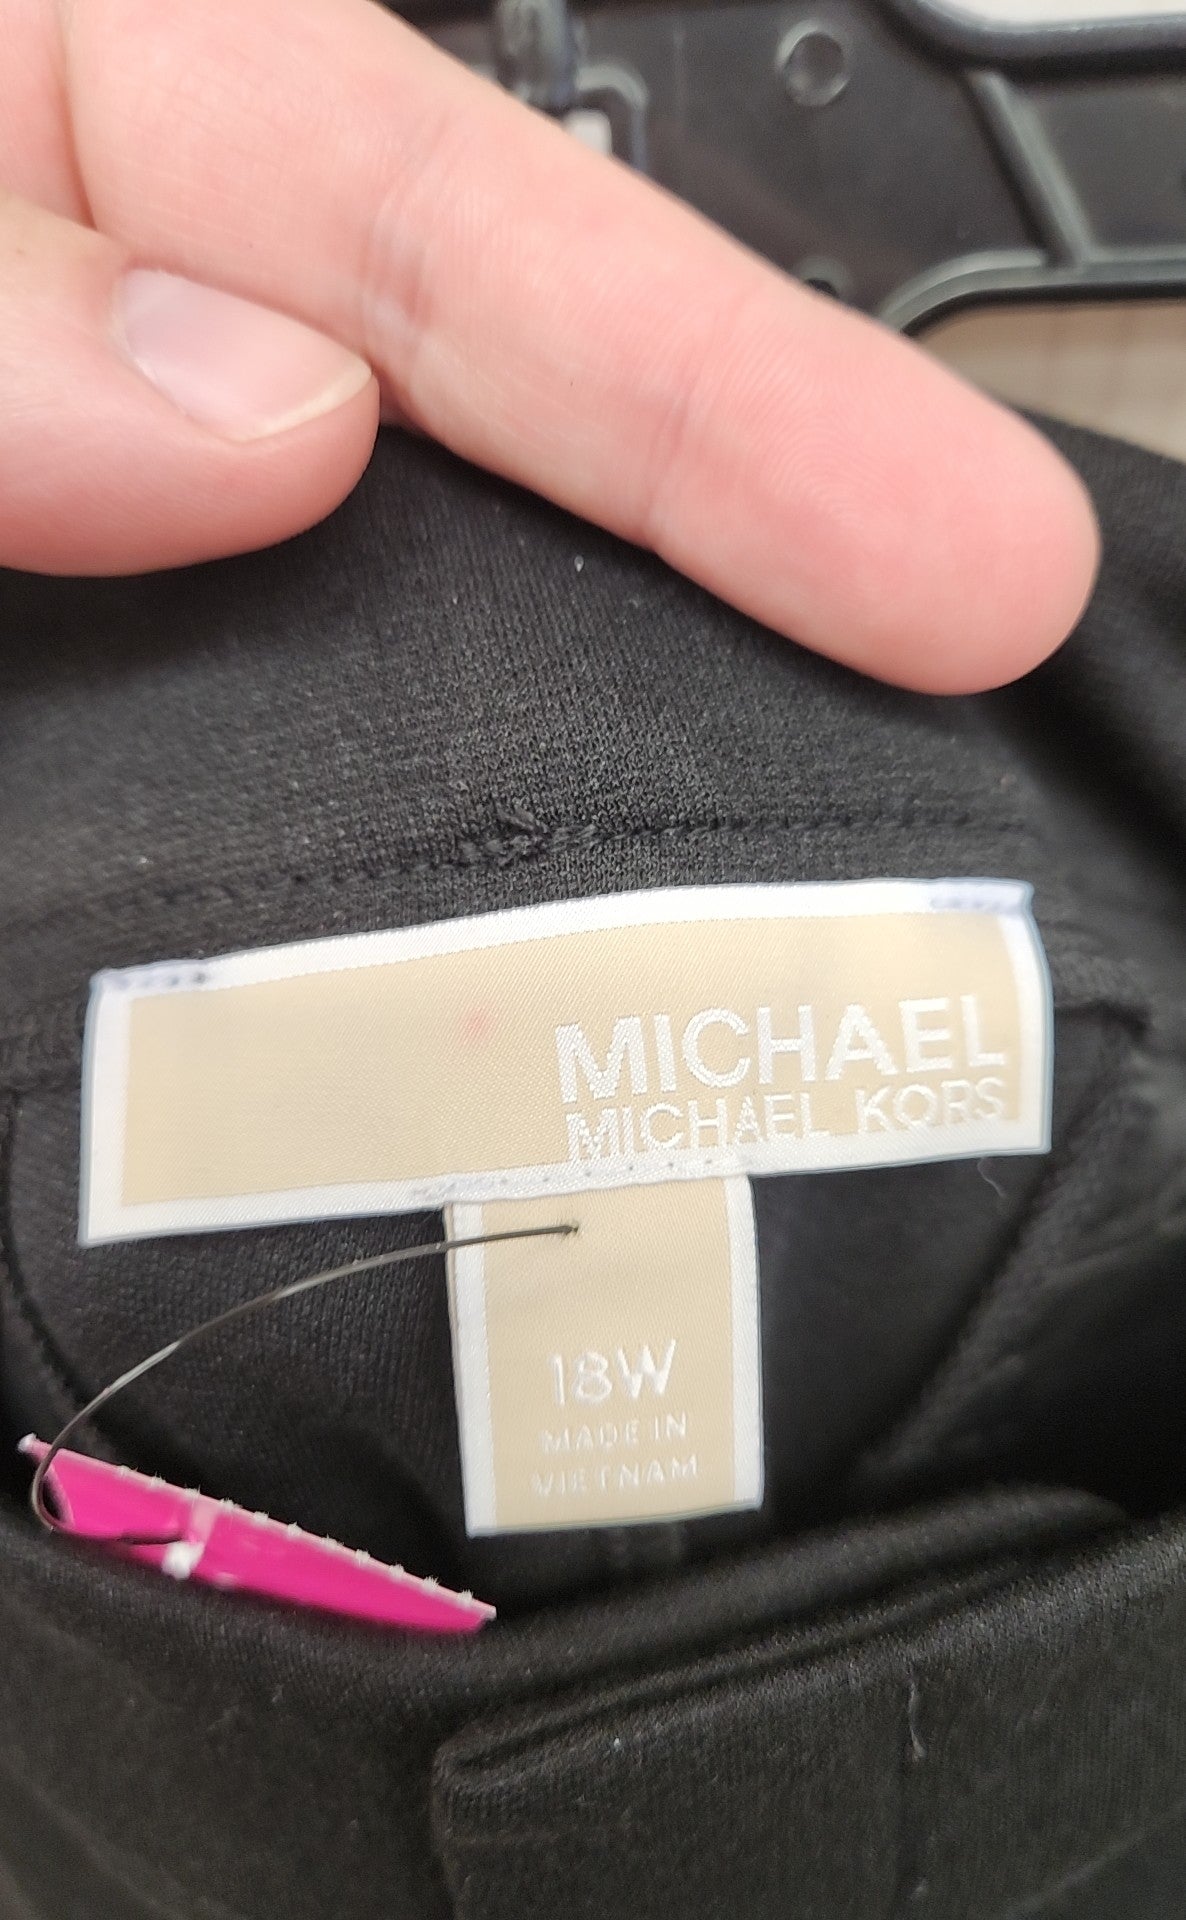 Michael Kors Women's Size 18W Black Pants NWT